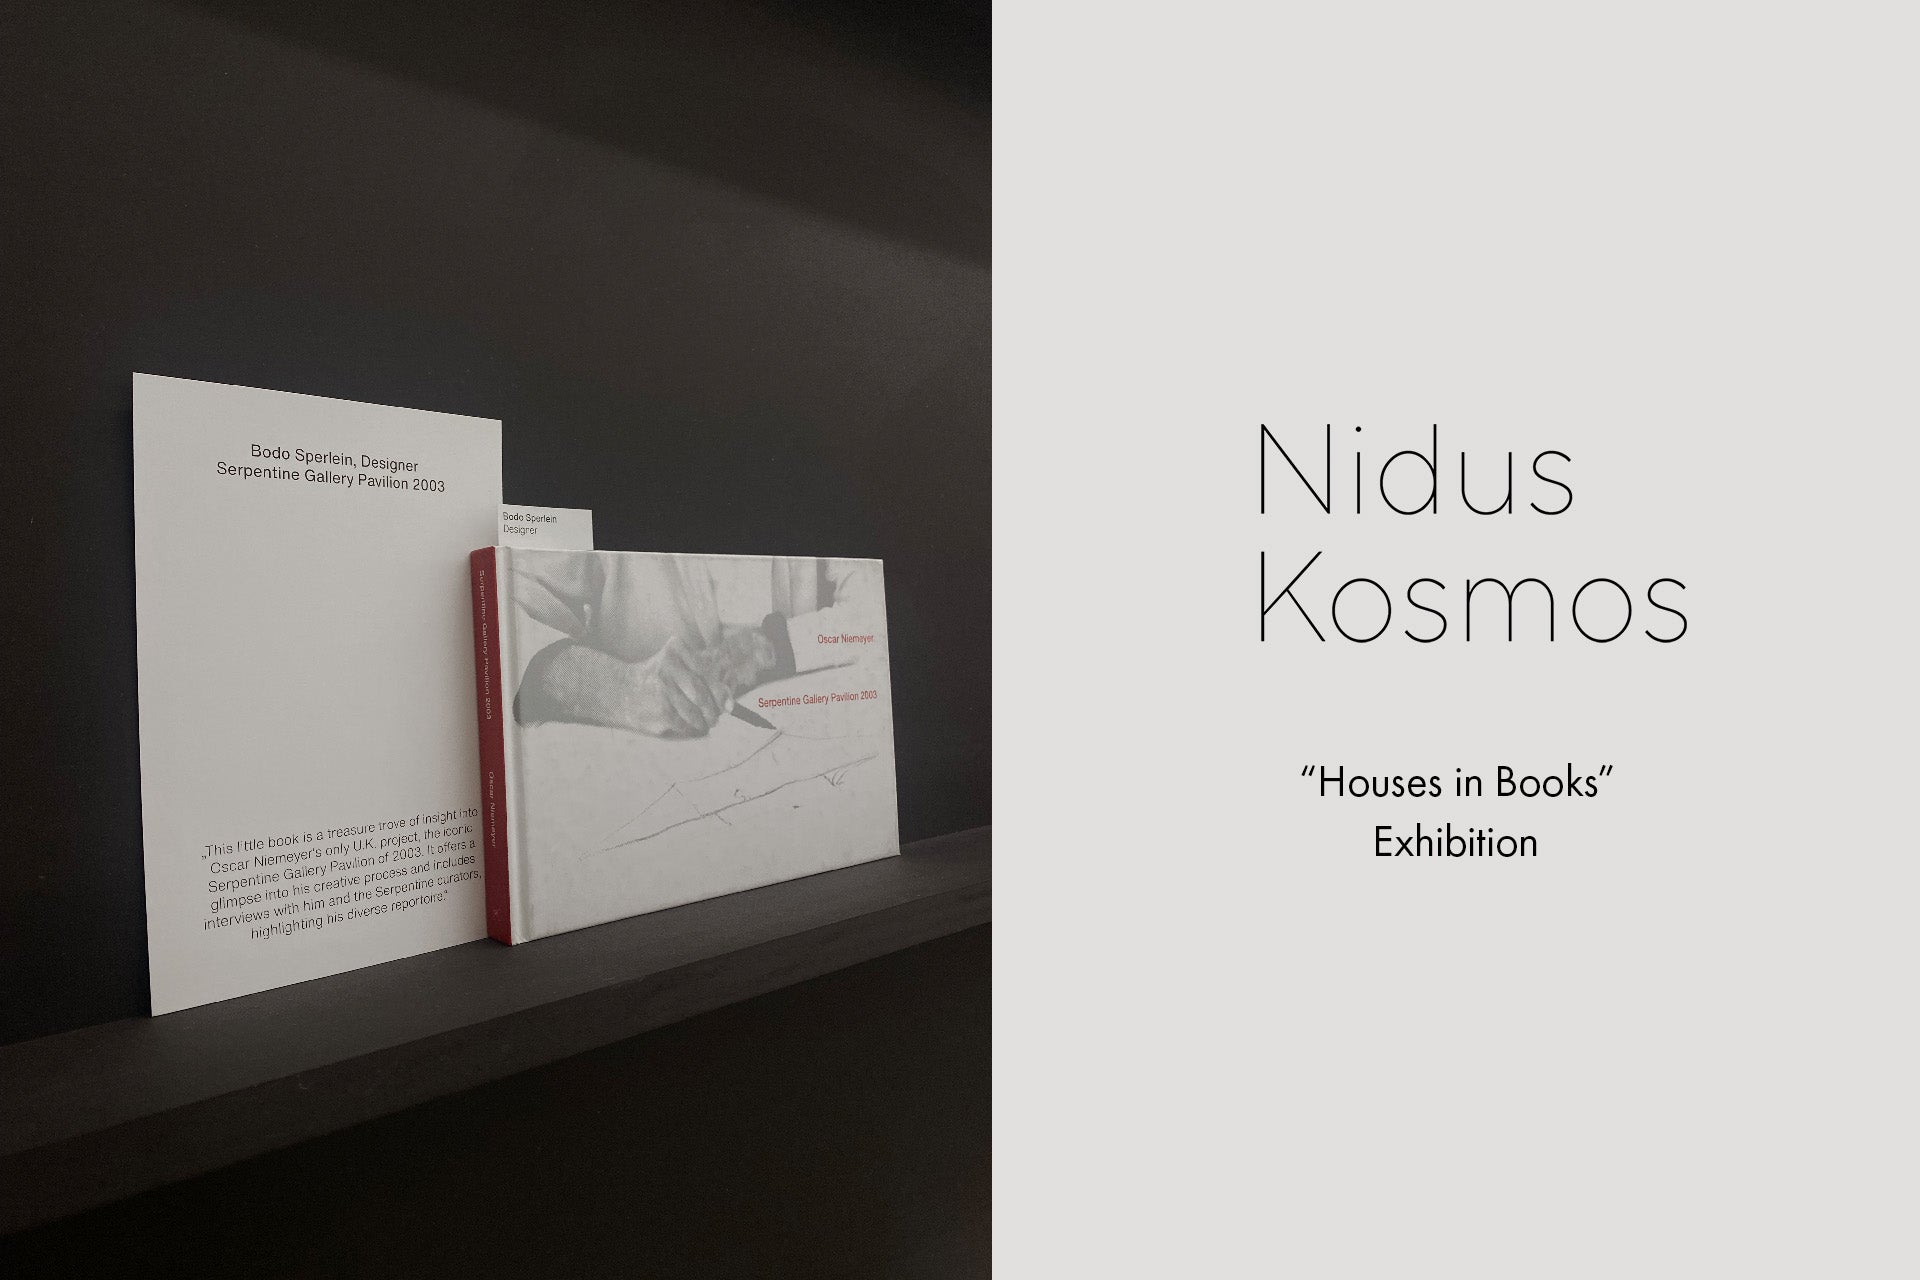 Nidus Kosmos exhibition